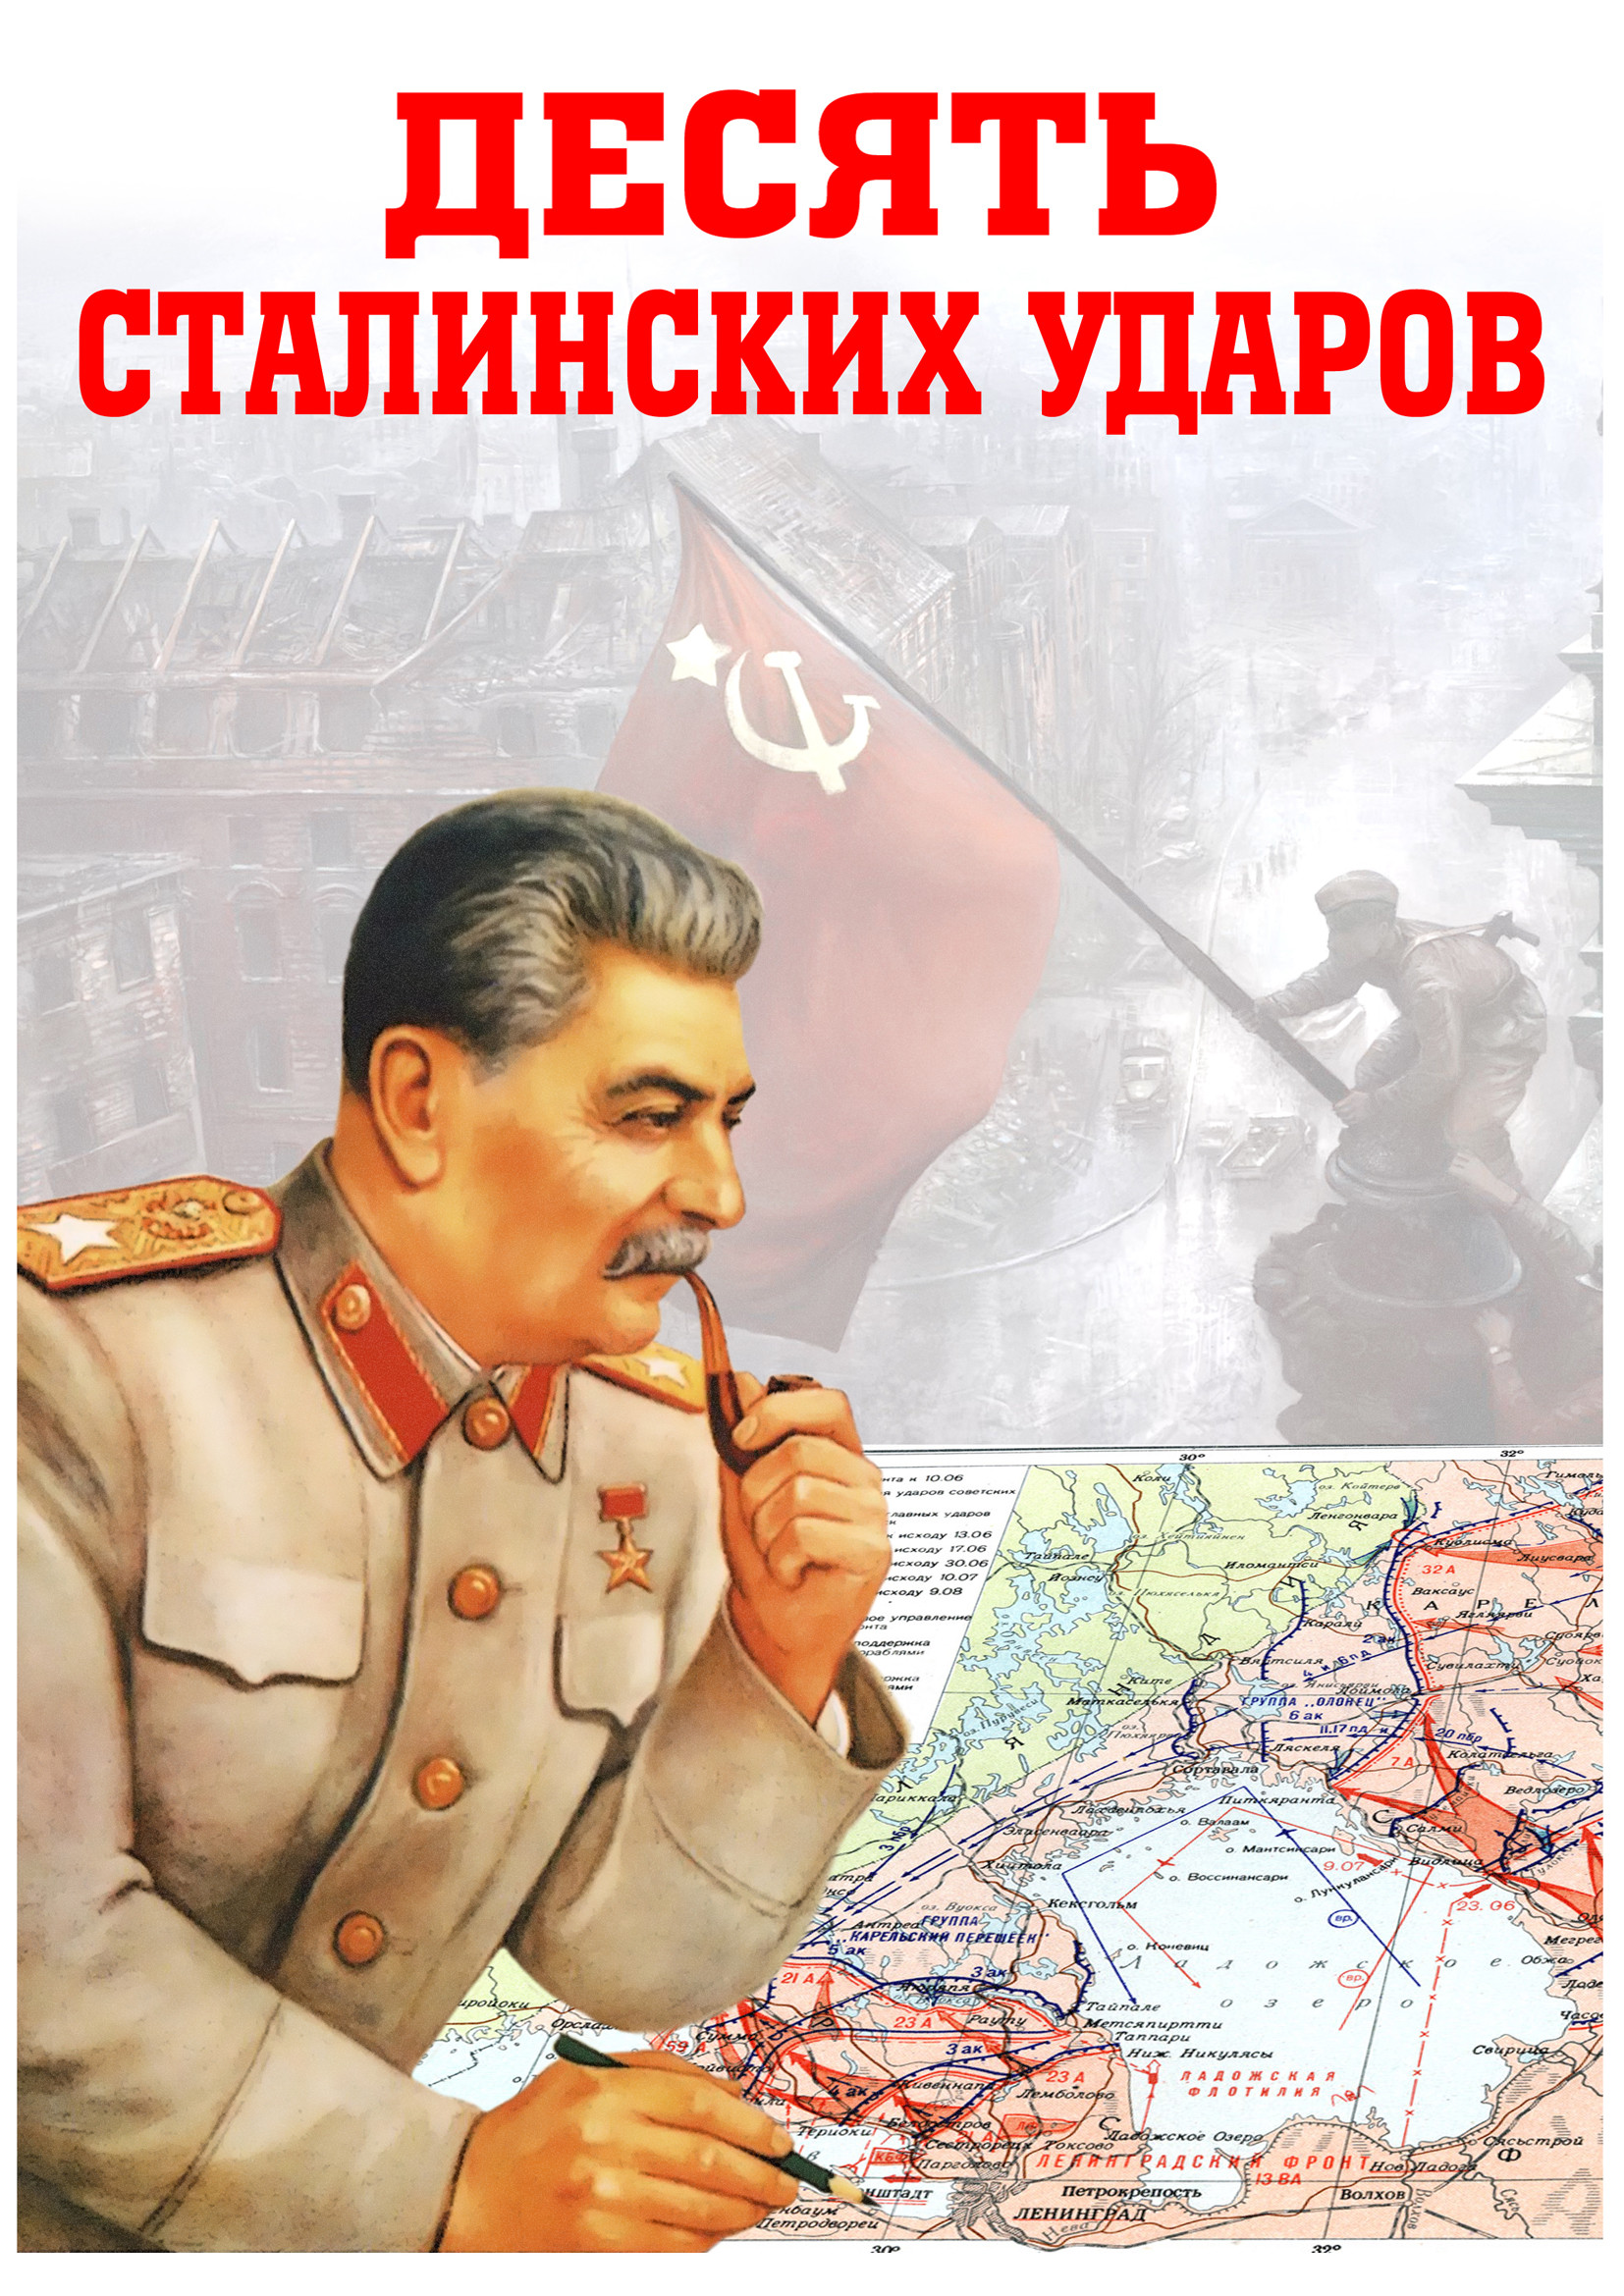 10-ть сталинских ударов.